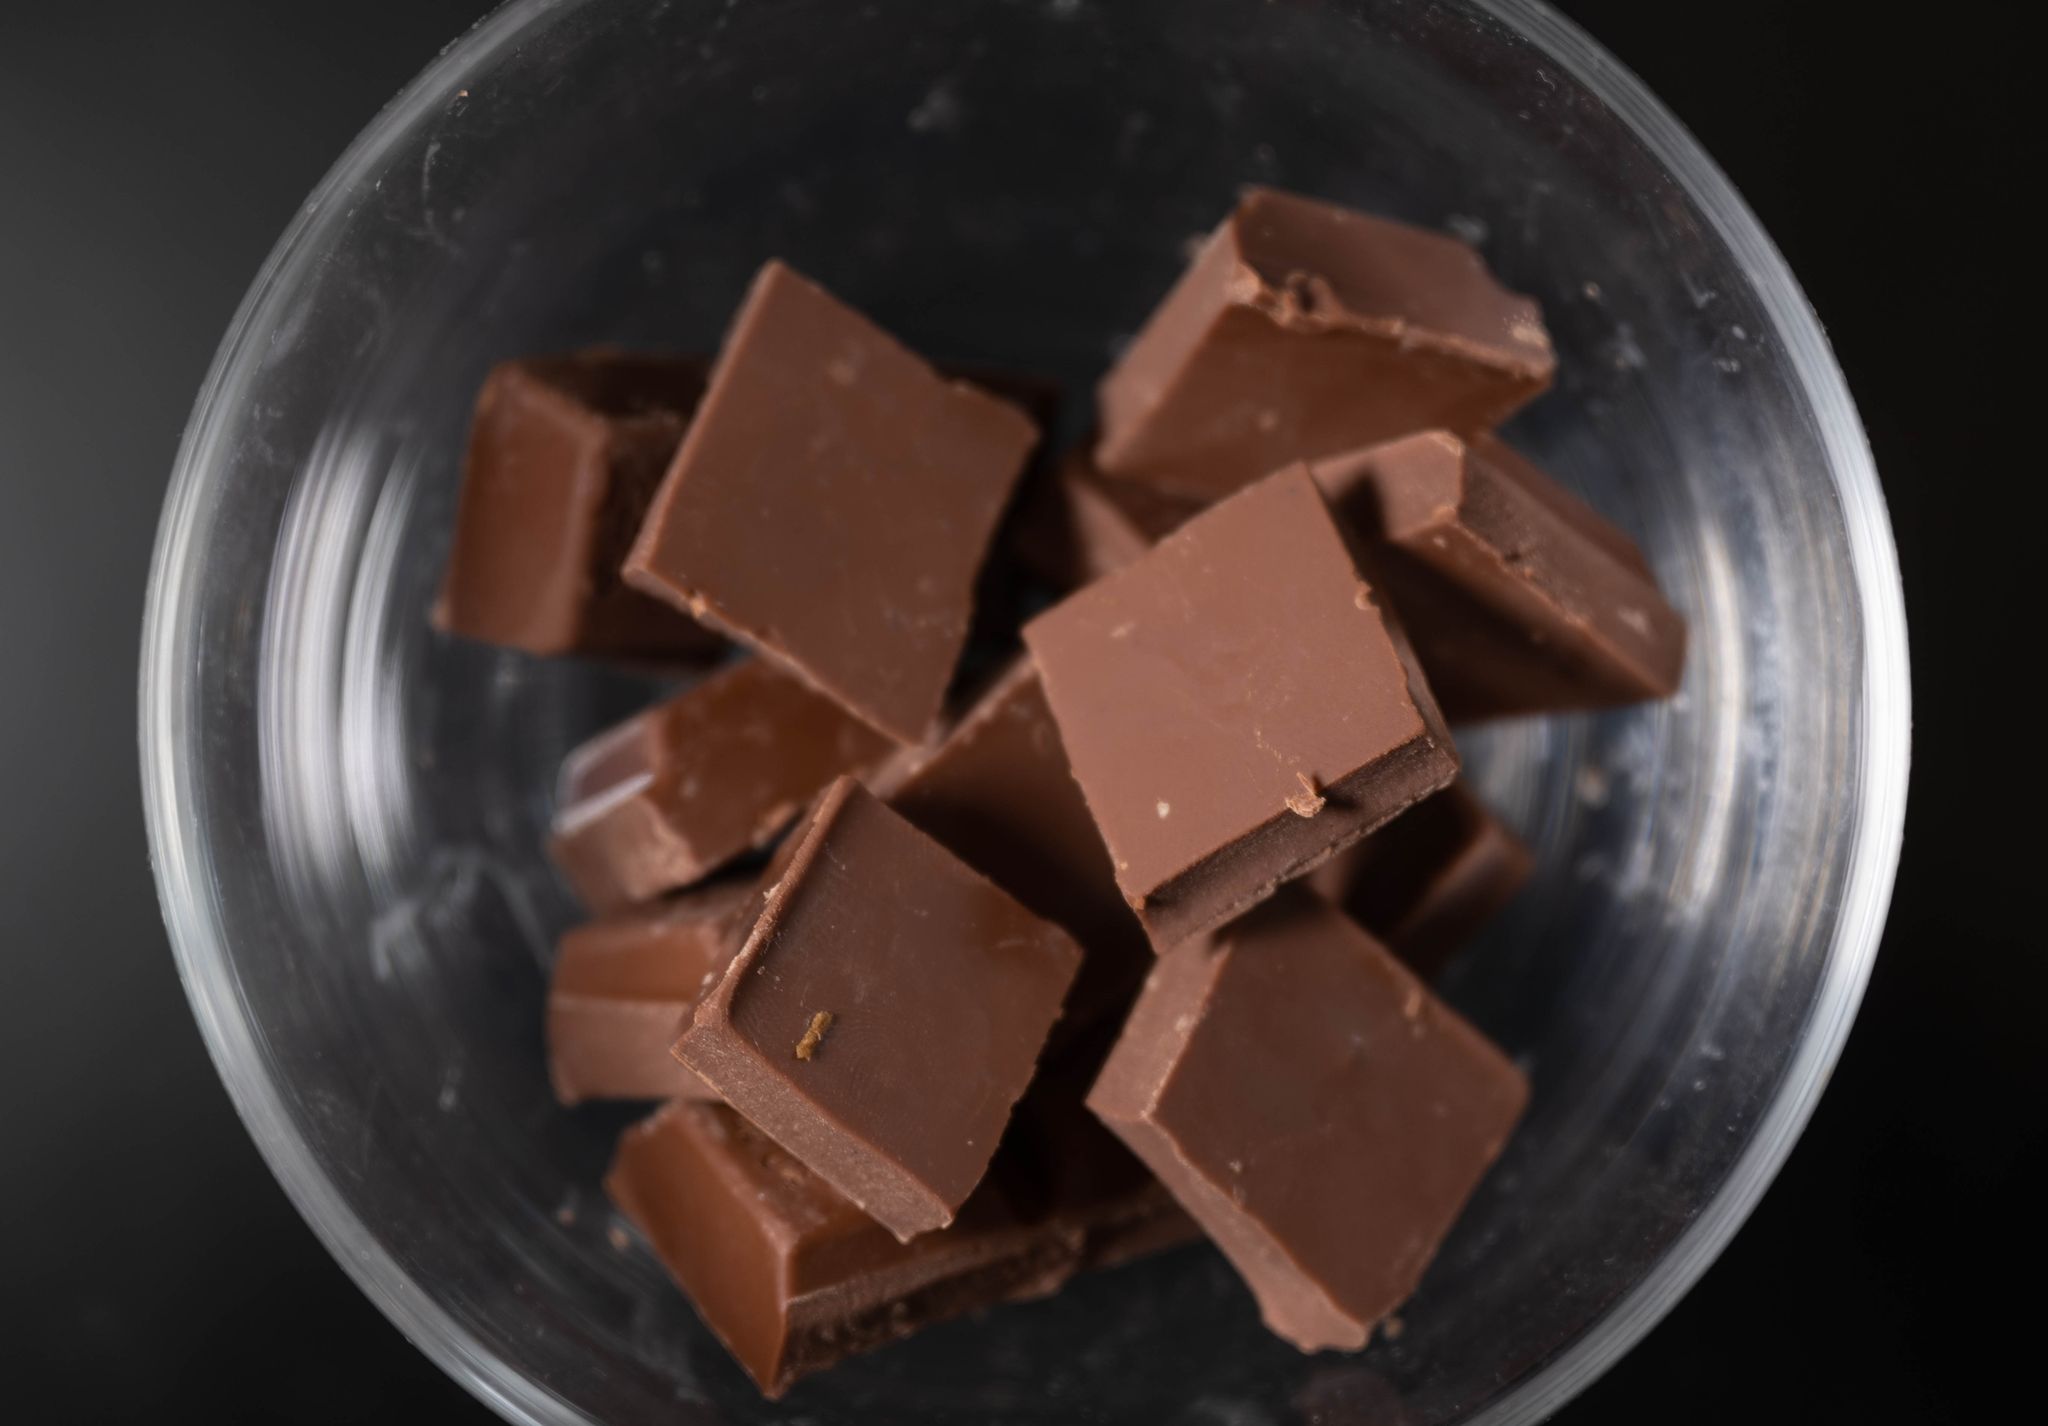 Hohe Kakaopreise könnten Schokolade teurer machen